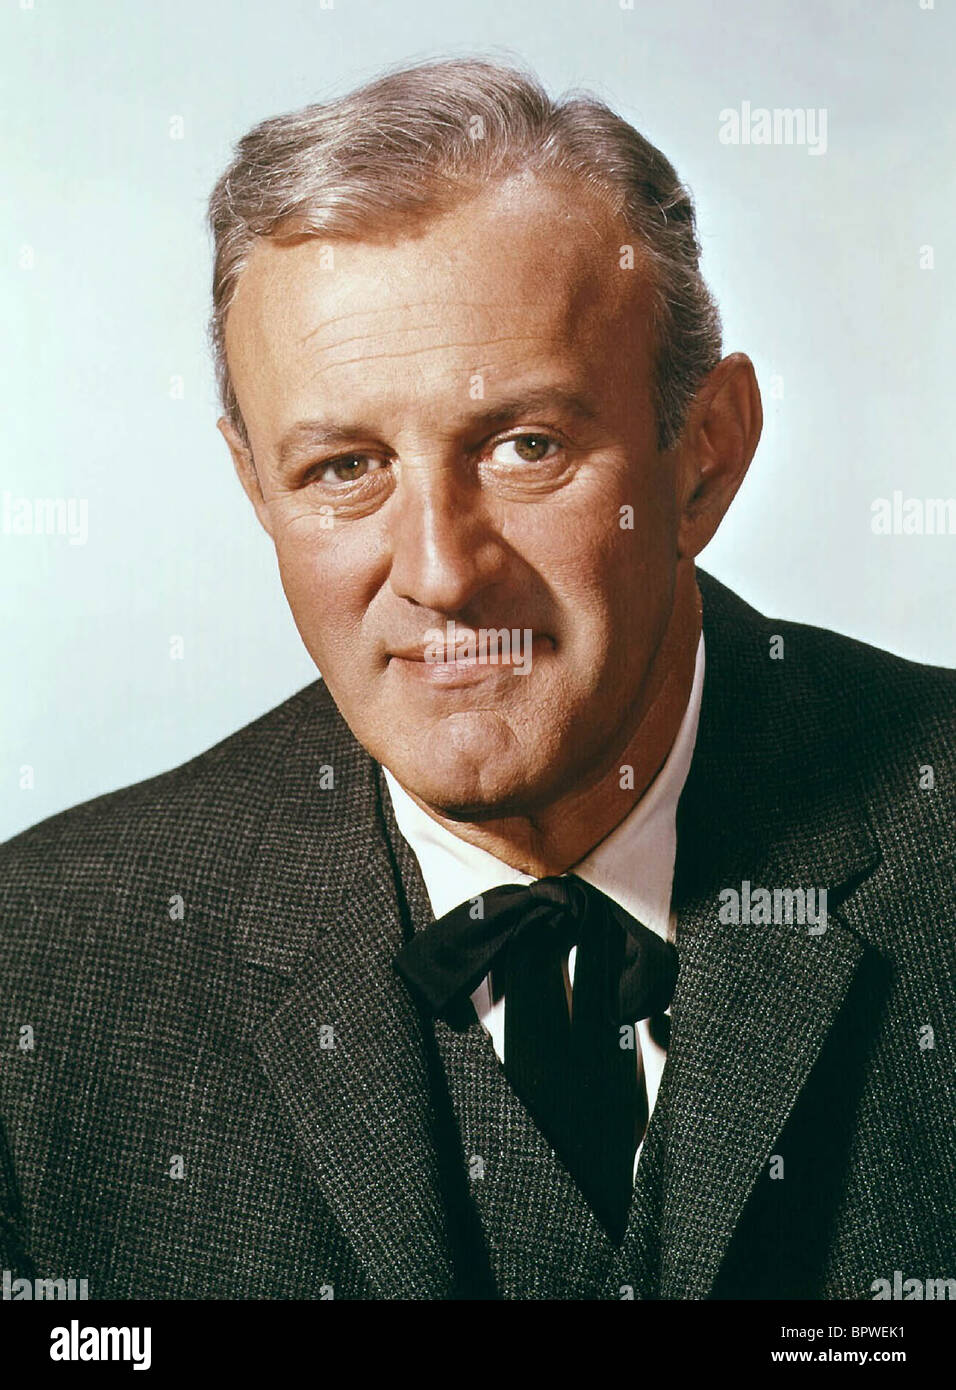 LEE J. COBB ACTOR (1960 Stock Photo - Alamy